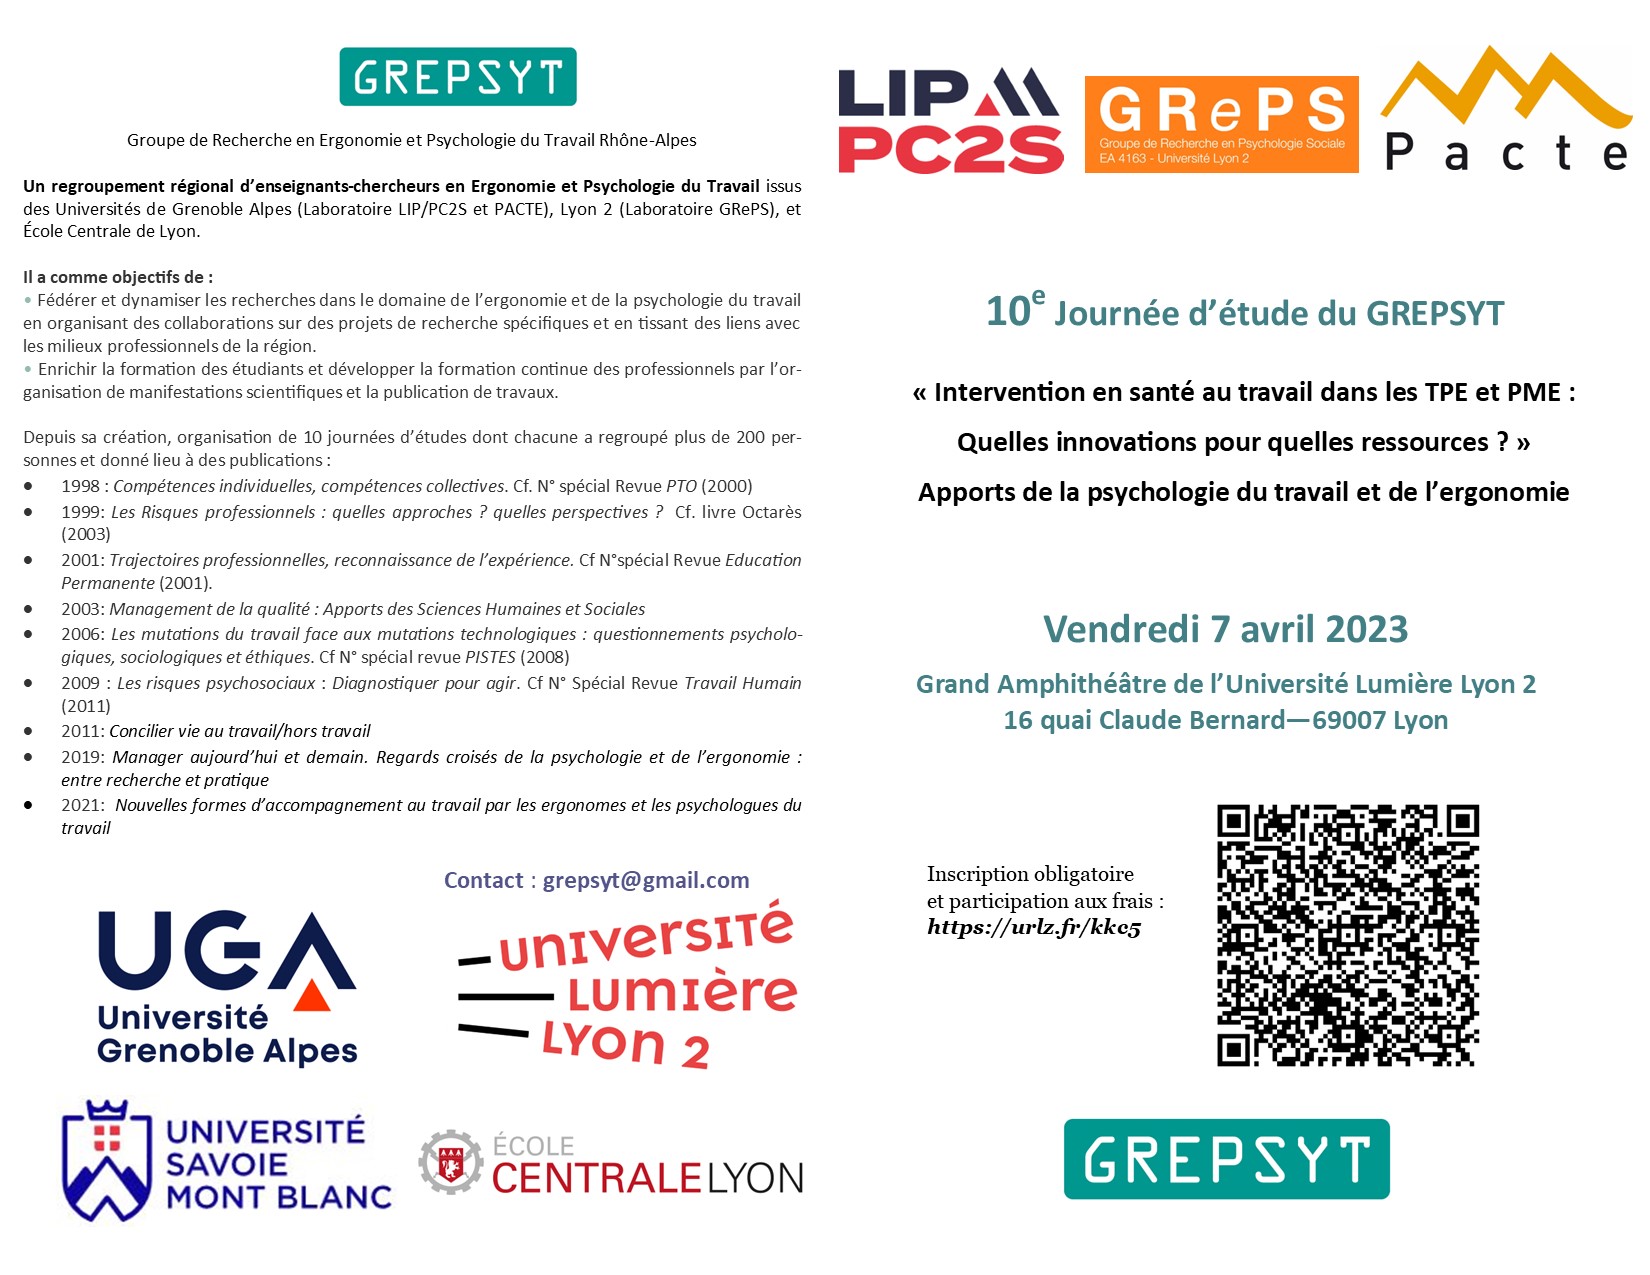 Journée d'étude du GREPSYT @ Grand Amphithéâtre de l'Université Lumière Lyon 2